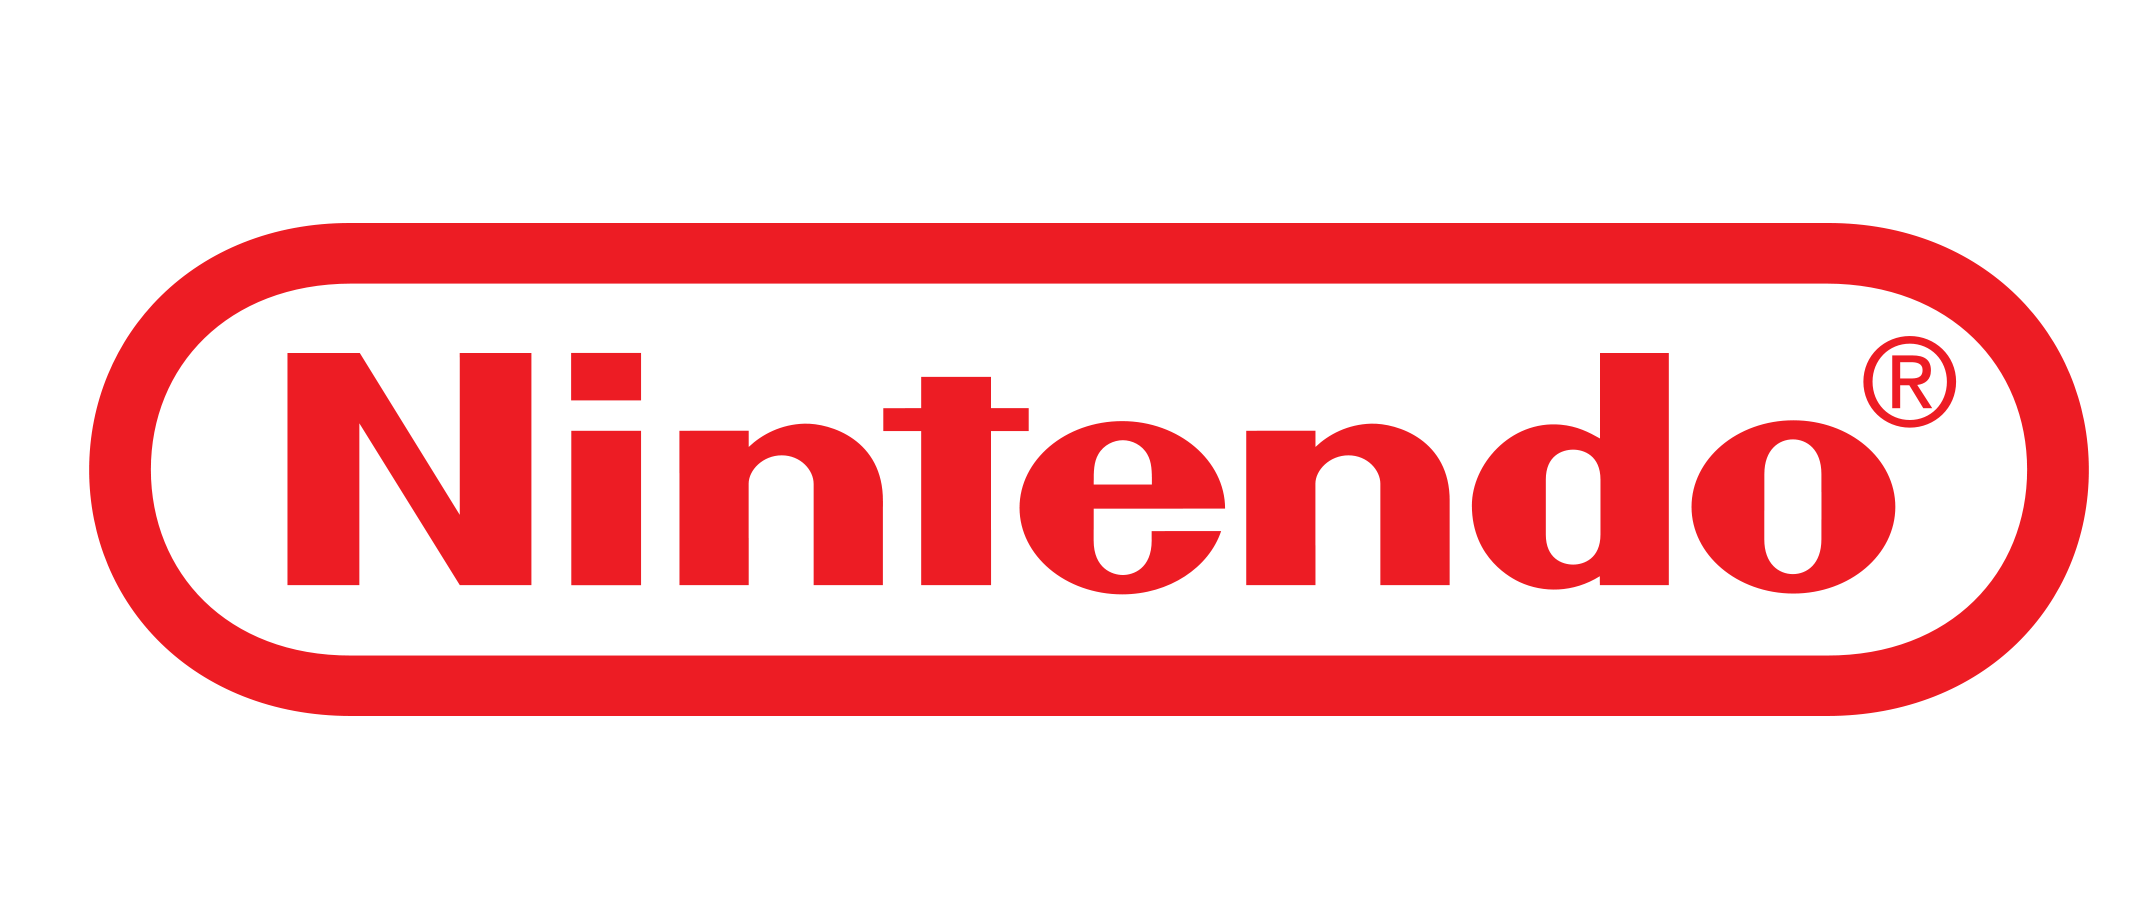 Nintendo-logo-red